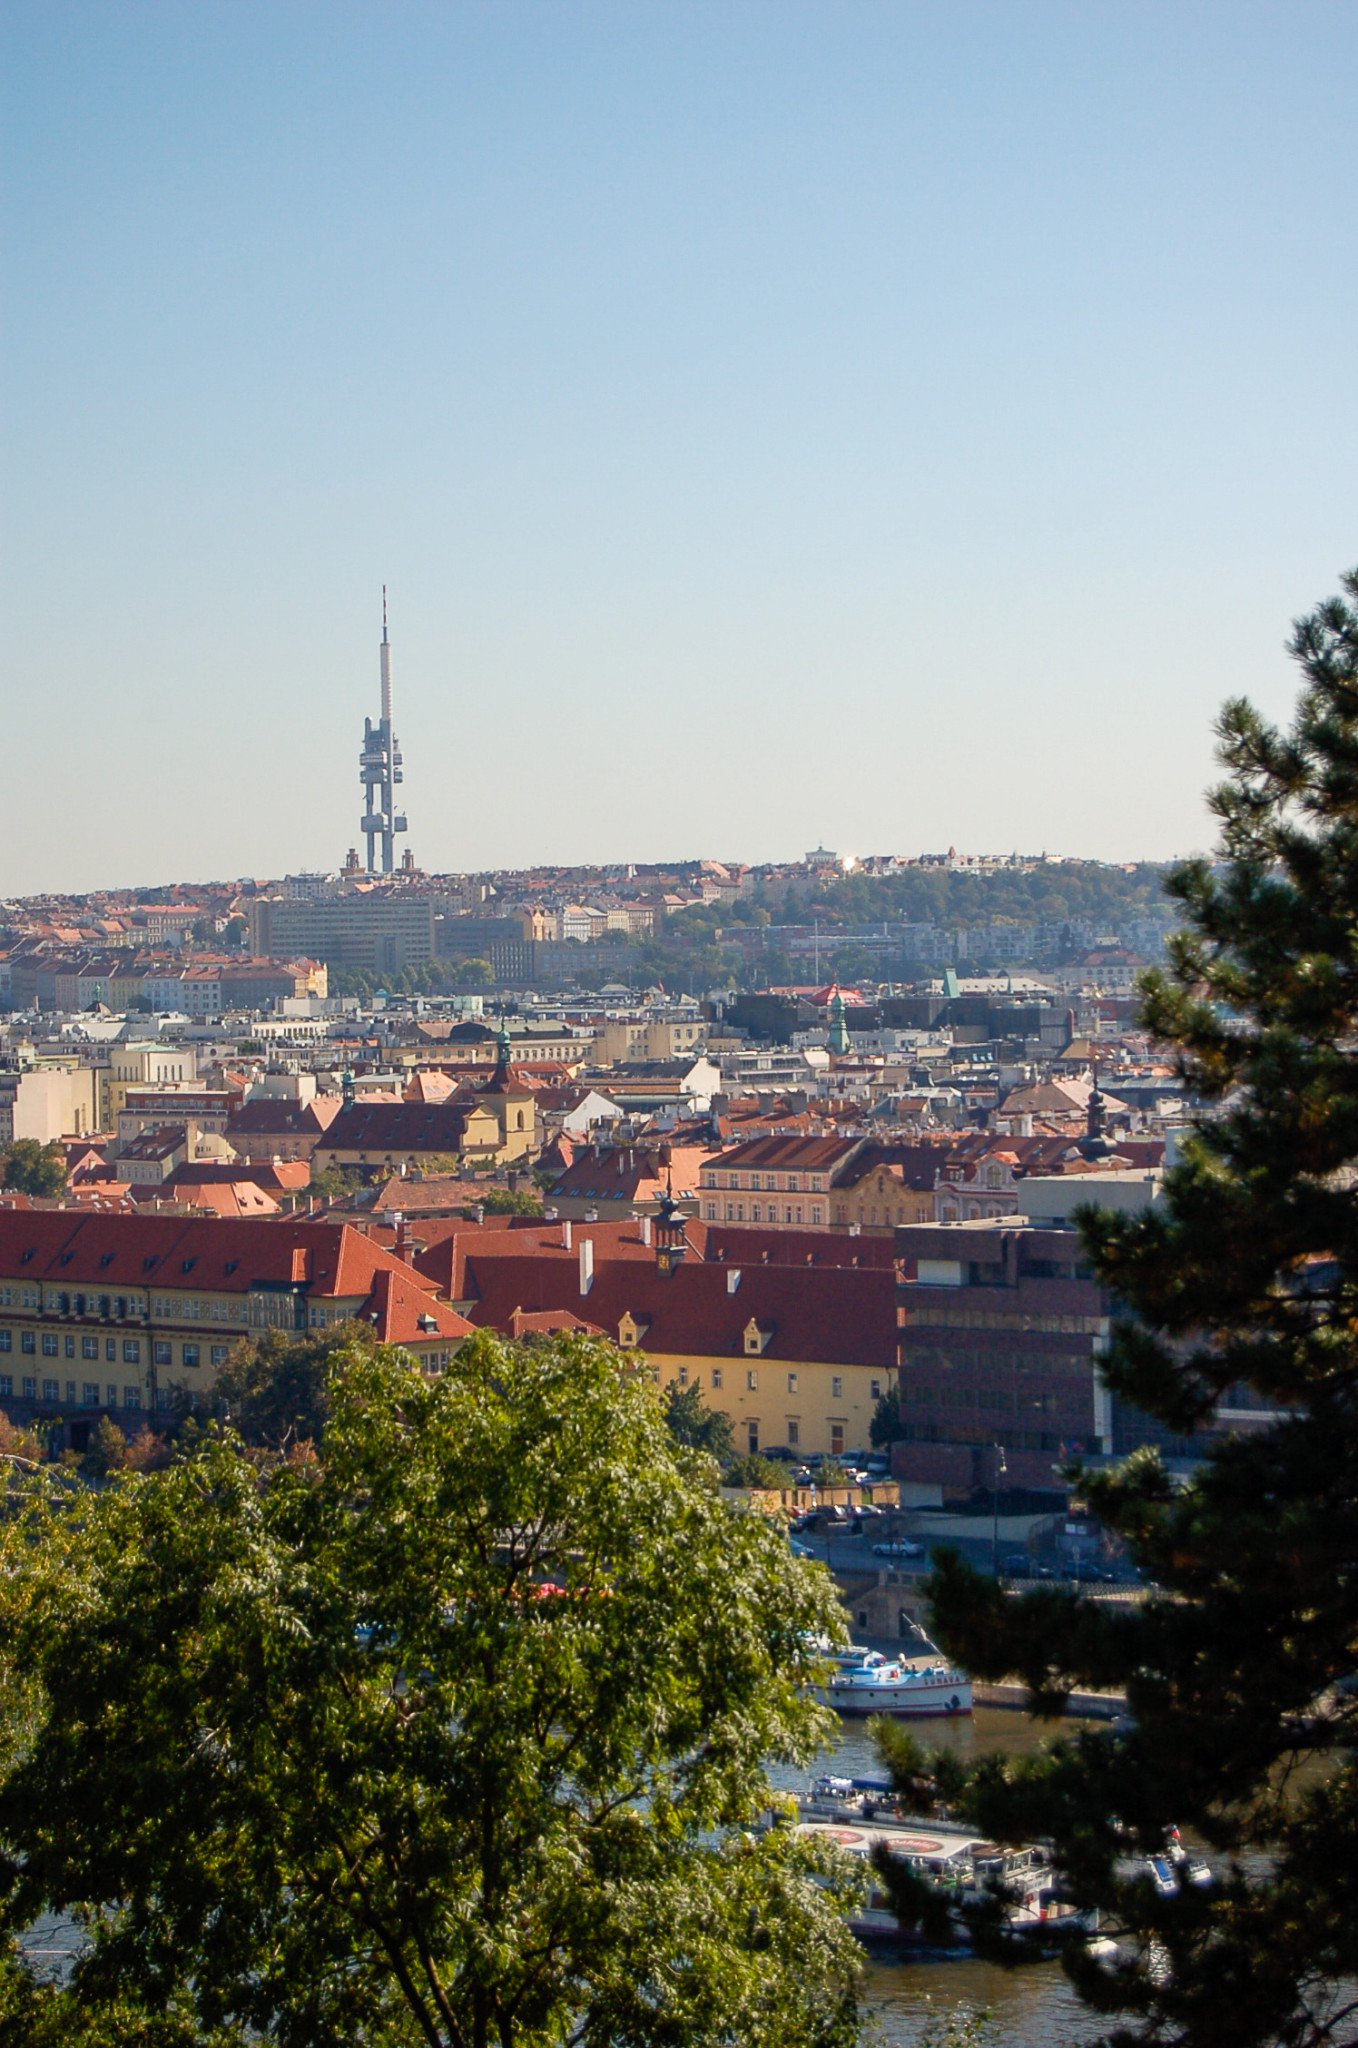 Der Zizkow Tower bzw. Fernsehturm von Prag im Hintergrund